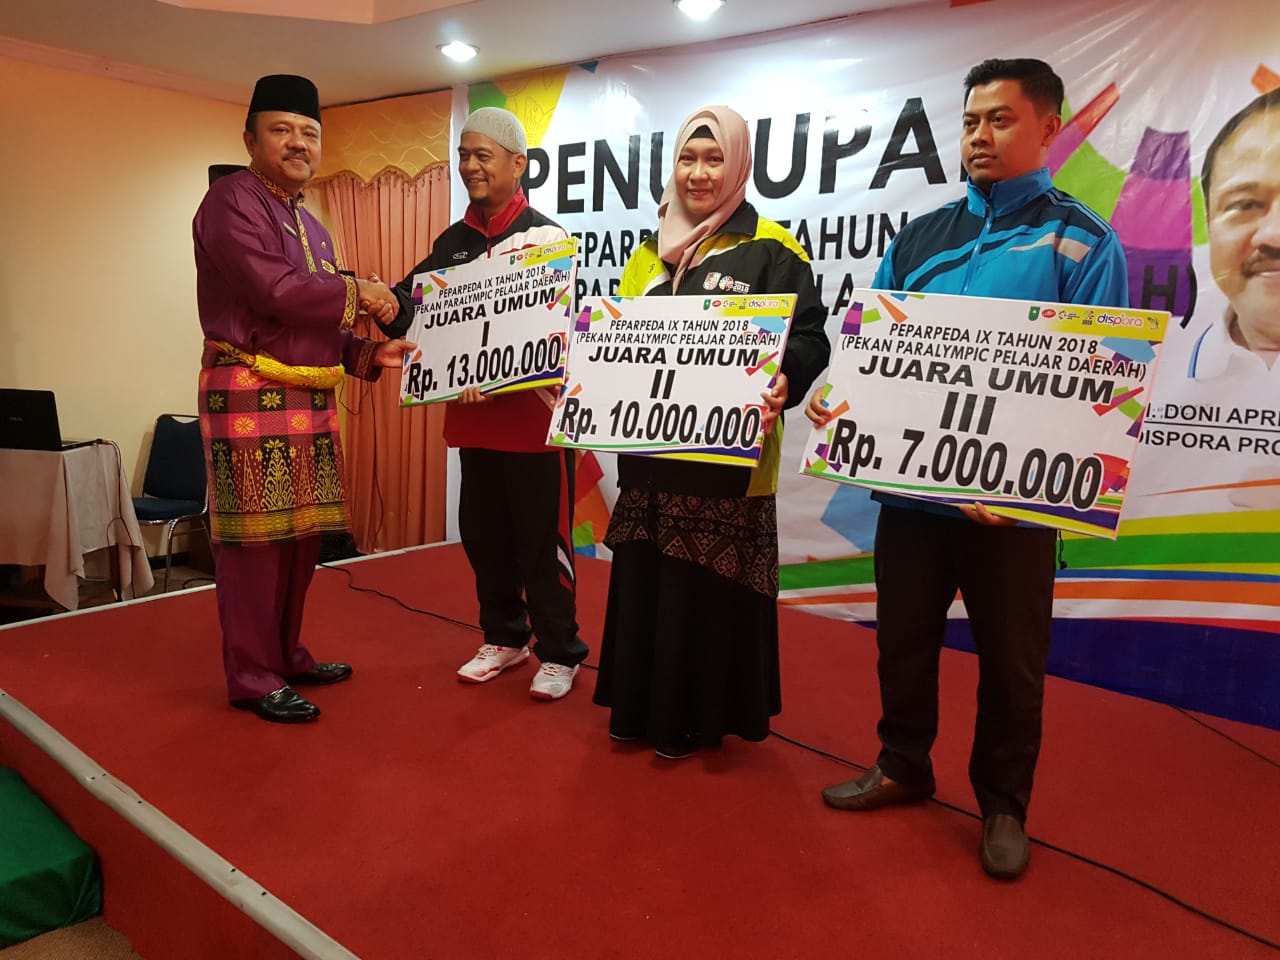 Peparpeda Riau 2018 Berakhir, Bengkalis Juara Umum